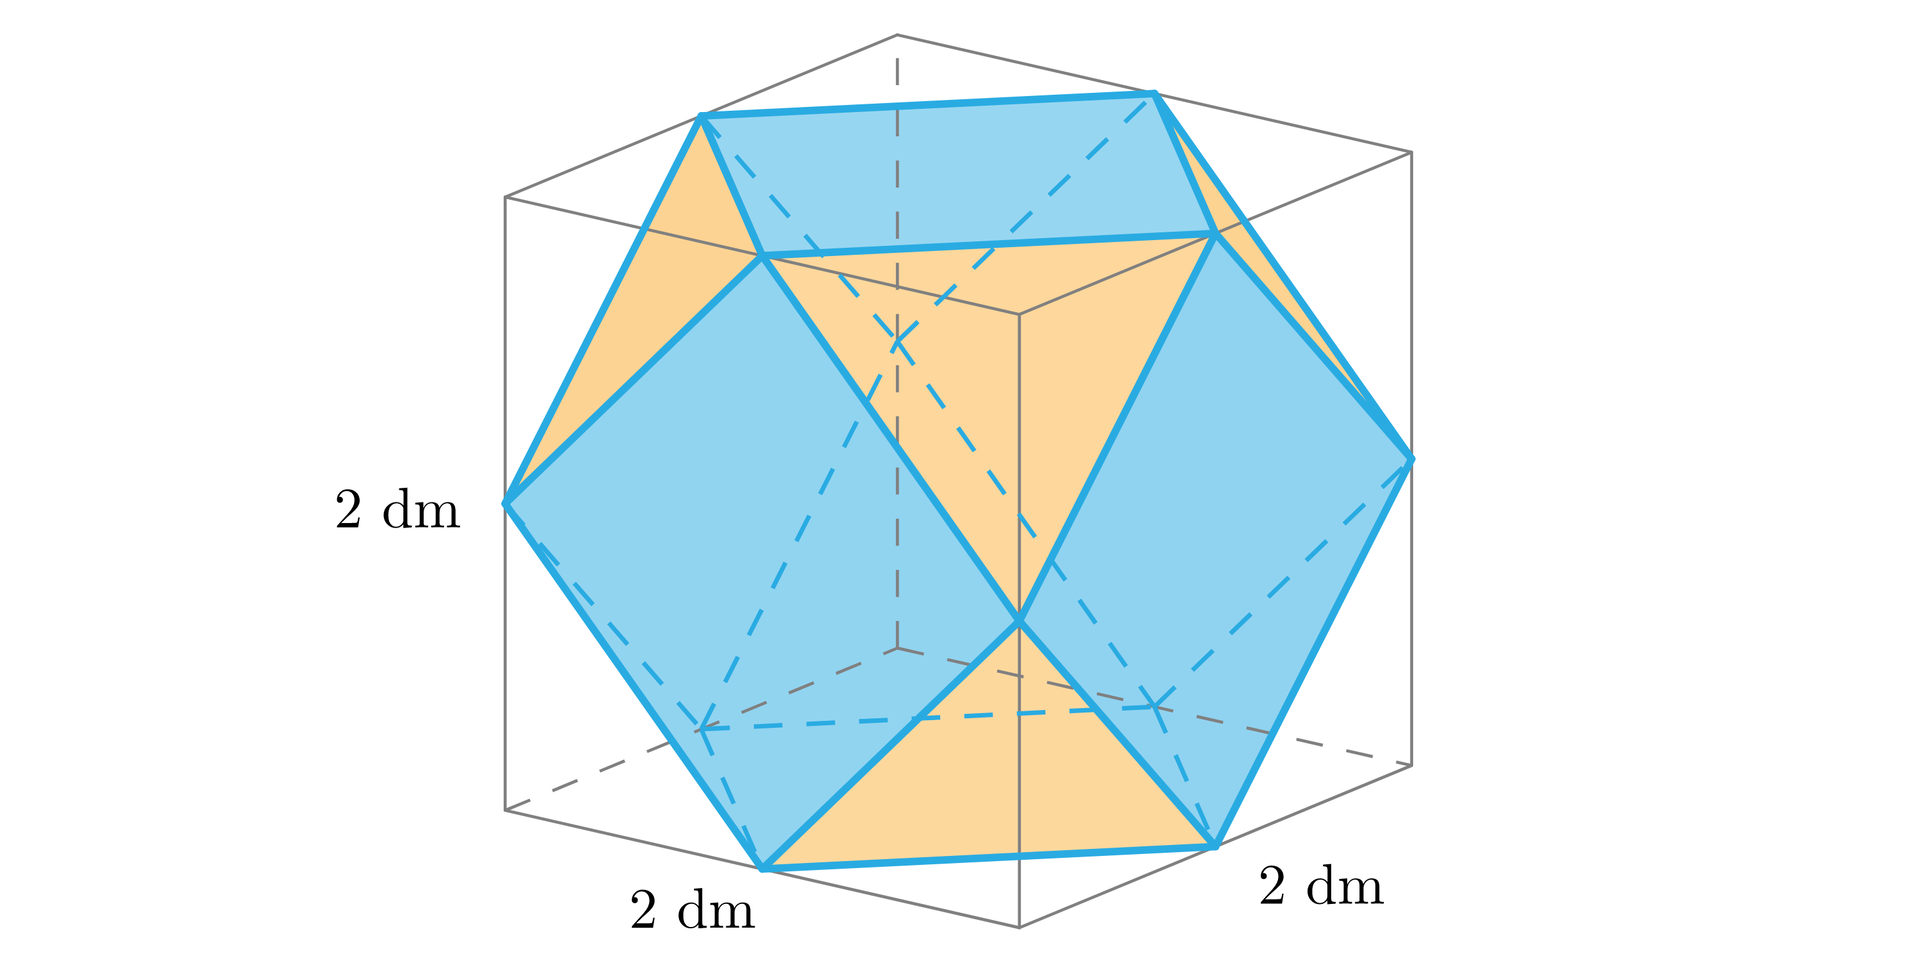 Ilustracja przedstawia sześcian z odciętymi narożnikami.  Cięcia poprowadzono przez środki krawędzi sześcianu dzięki czemu utworzono sześcio-ośmiościan. Bryła ta składa się z sześciu kwadratów oraz ośmiu trójkątów równobocznych i  jest wpisana w sześcian o długości krawędzi równej dwa decymetry. 